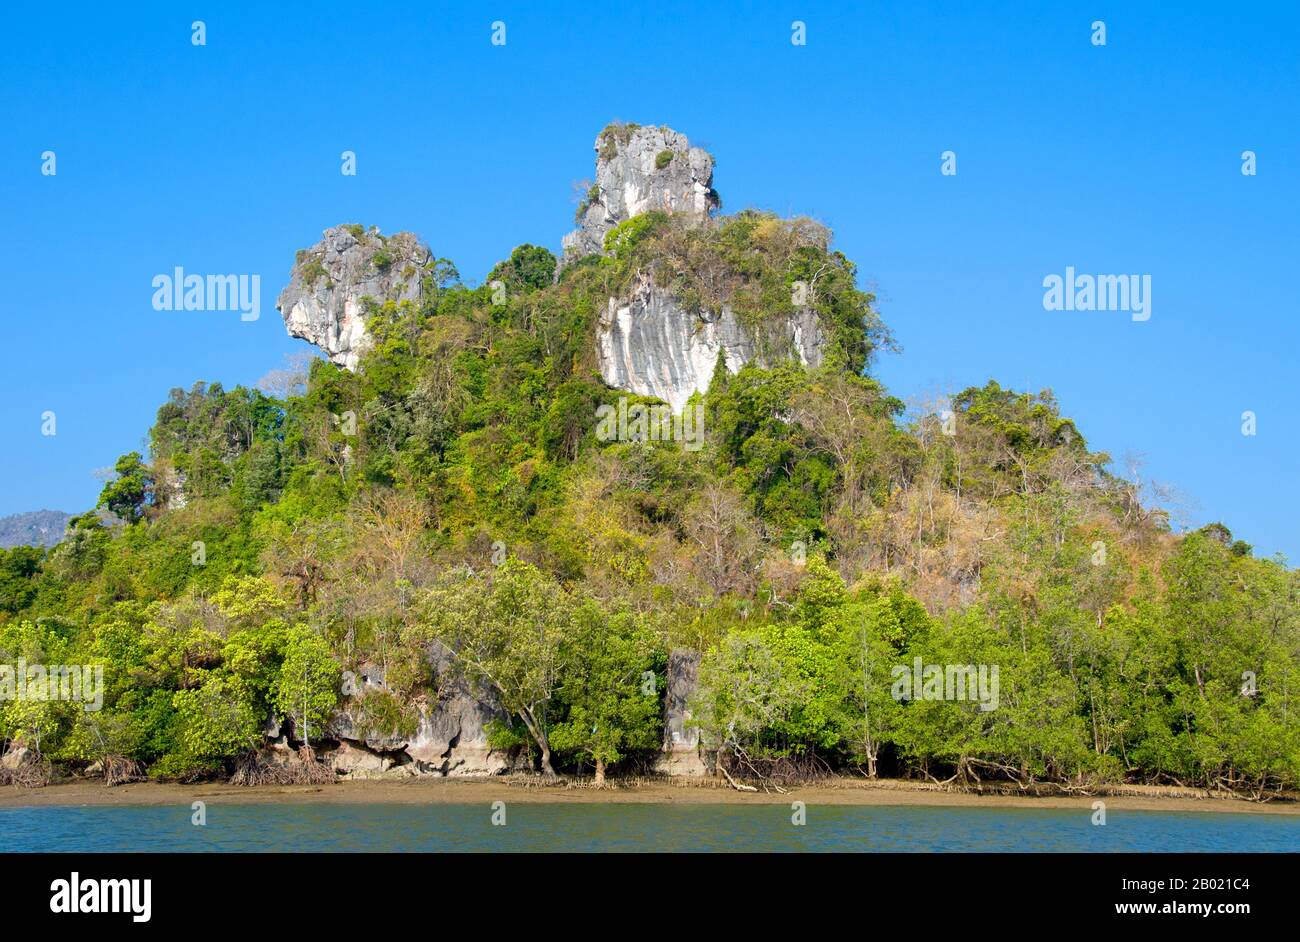 Inaugurato nel 1981, il Parco Nazionale di Ao Phang Nga copre un'area di circa 400 kmq ed è composto principalmente da rocce carsiche e isole, torreggianti scogliere e le acque cristalline del Mare di Phuket. Sebbene sia sede di un'ampia varietà di creature marine e costiere, tra cui il monitor dell'acqua lungo due metri, la maggior parte delle persone visita il parco per ammirare e navigare attraverso e intorno alle numerose torri carsiche che si profilano. Le mangrovie sono diversi tipi di alberi fino a media altezza e arbusti che crescono in habitat salini di sedimenti costieri nei tropici e nei subtropici - principalmente tra latitudini 25° N e 25° S. Foto Stock